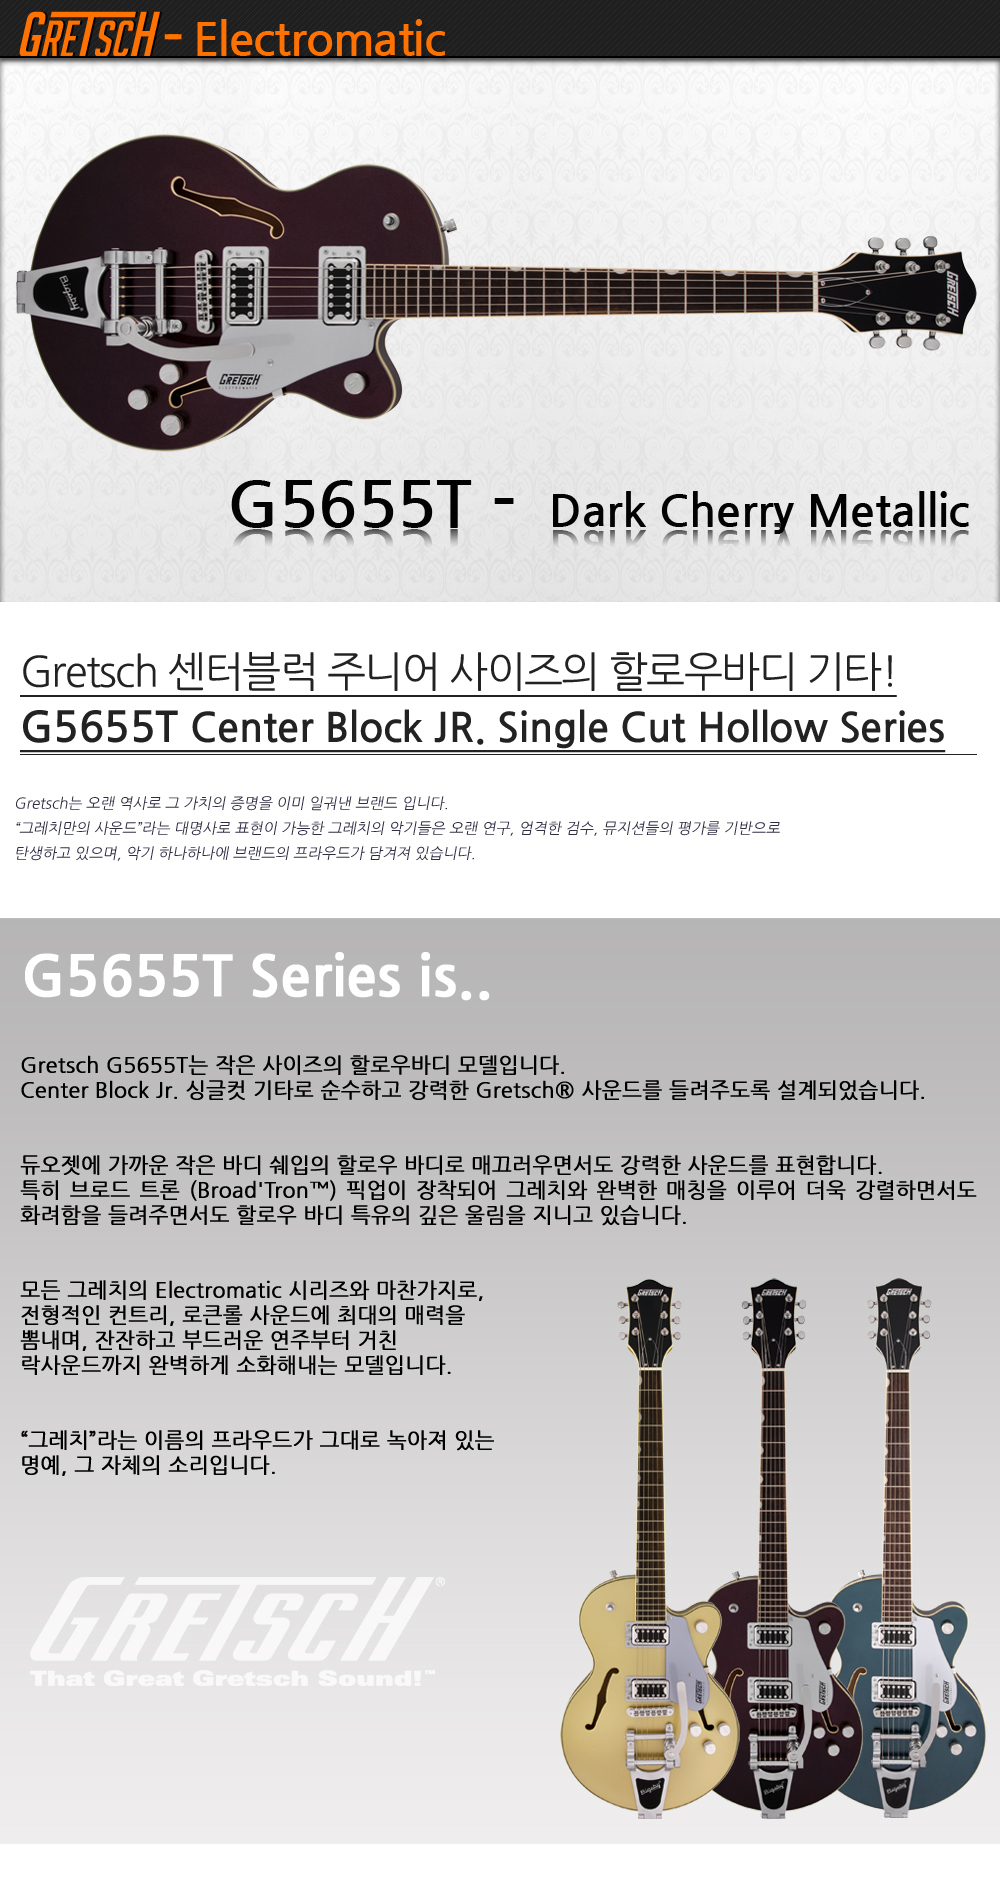 Gretsch-G5655T-DarkCherryMetallic_1_103053.jpg